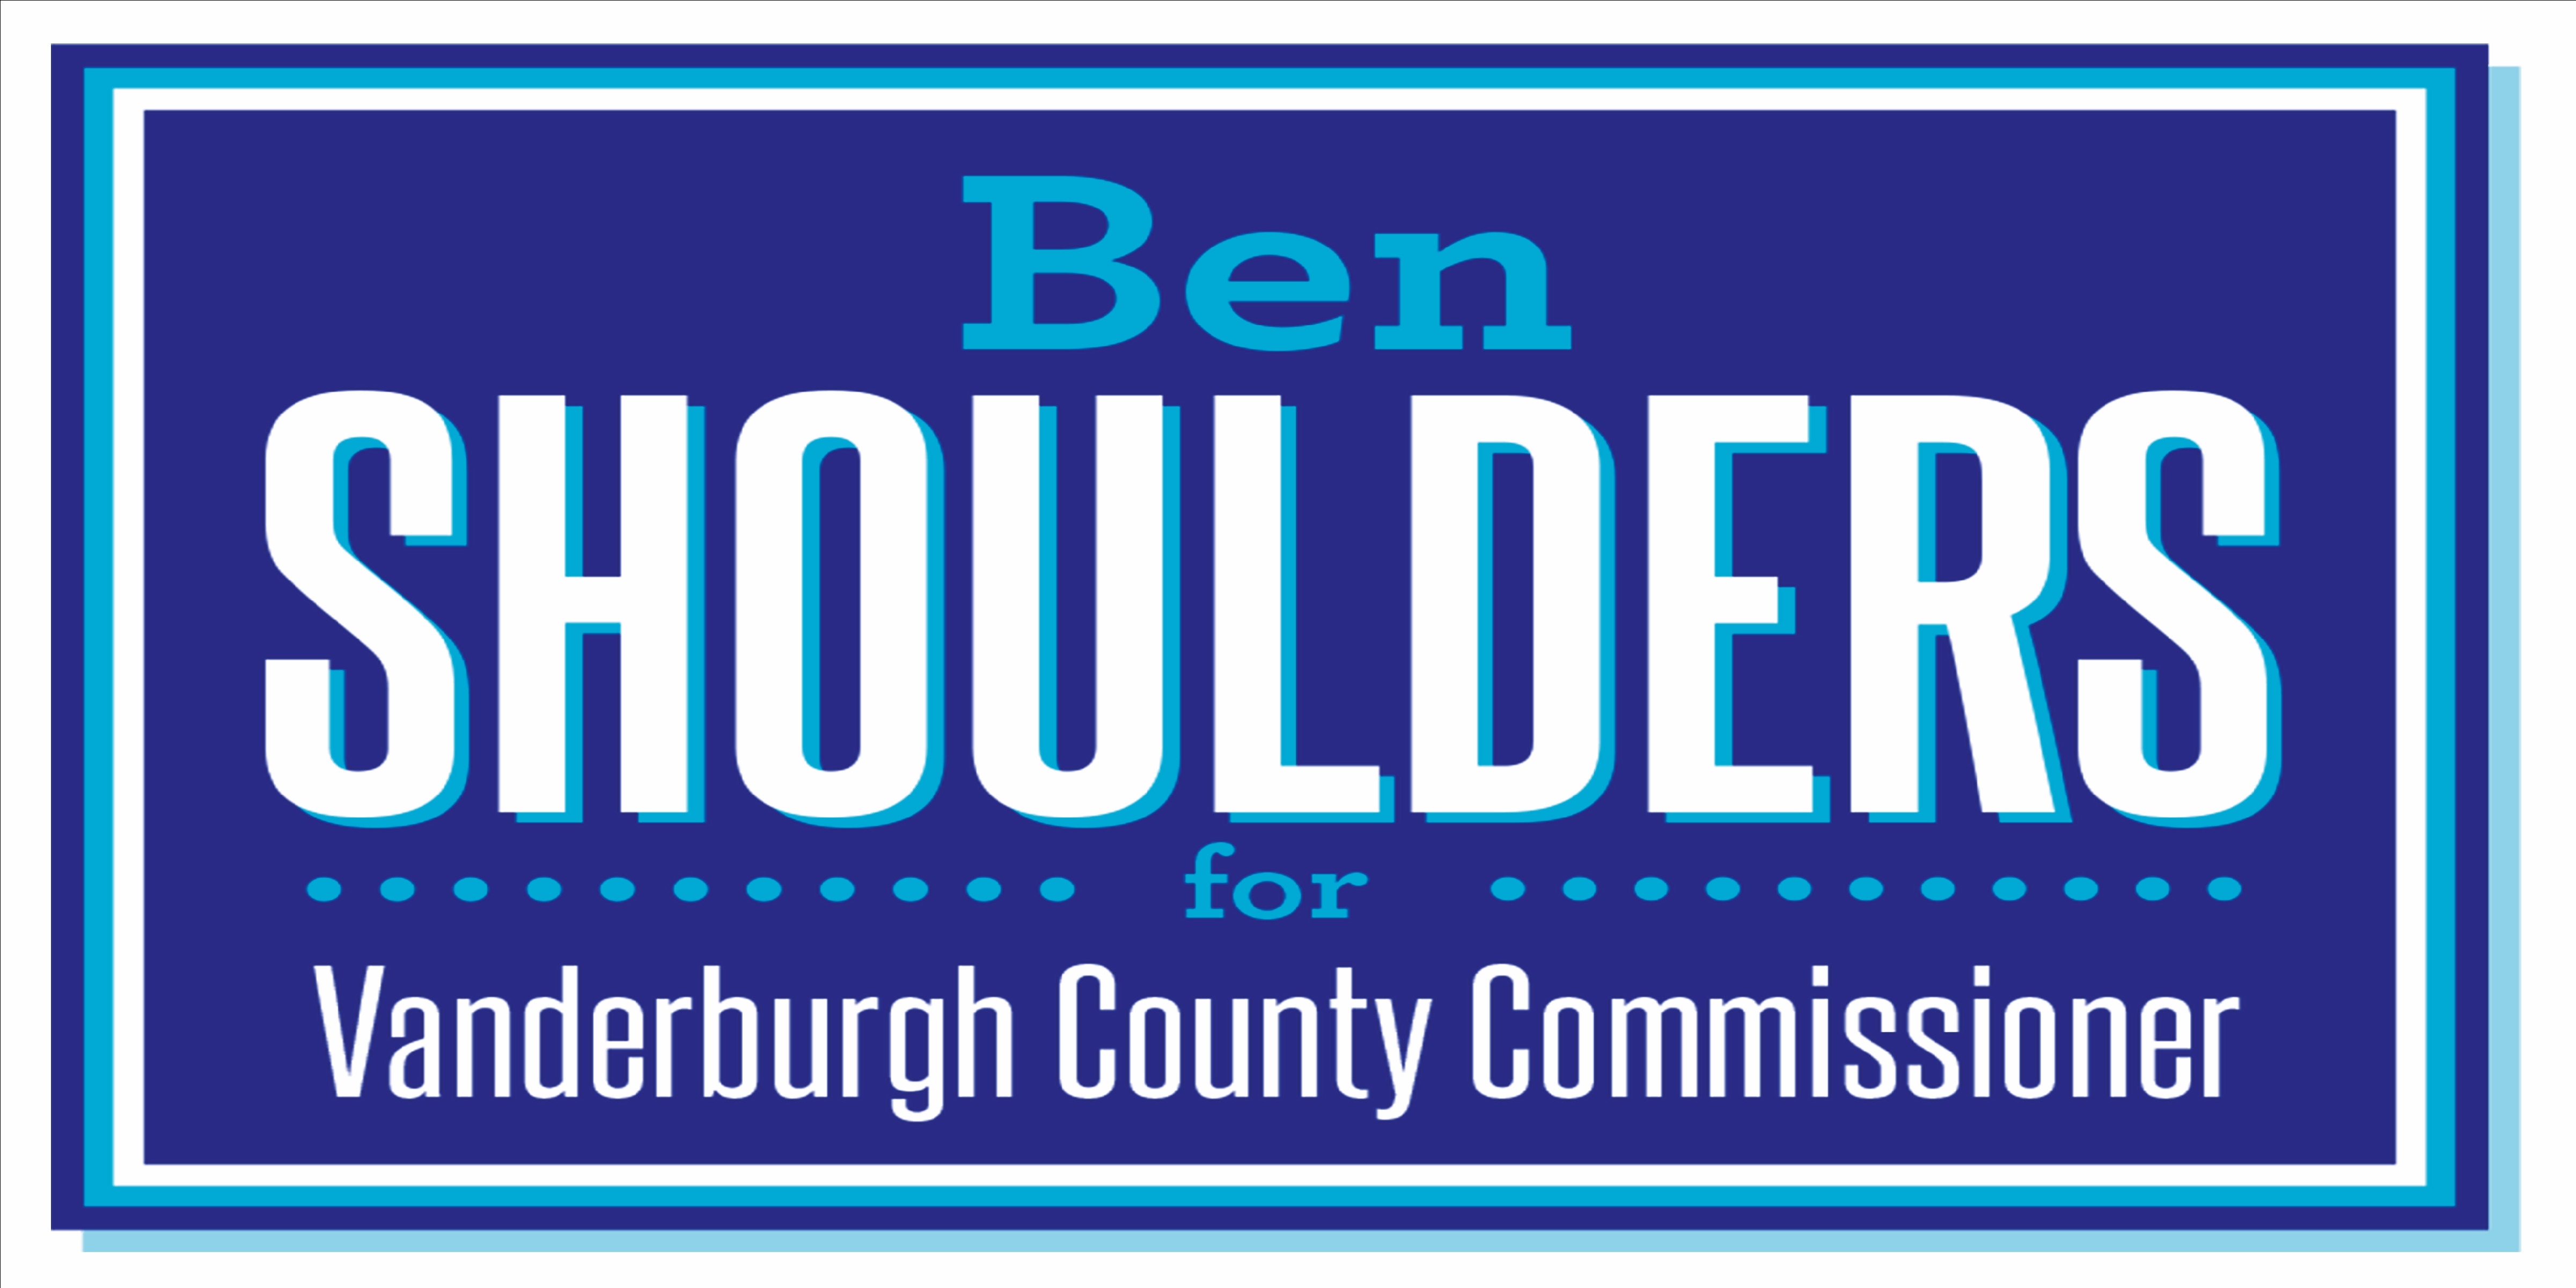 Ben-Shoulders-Vand-Commisioner